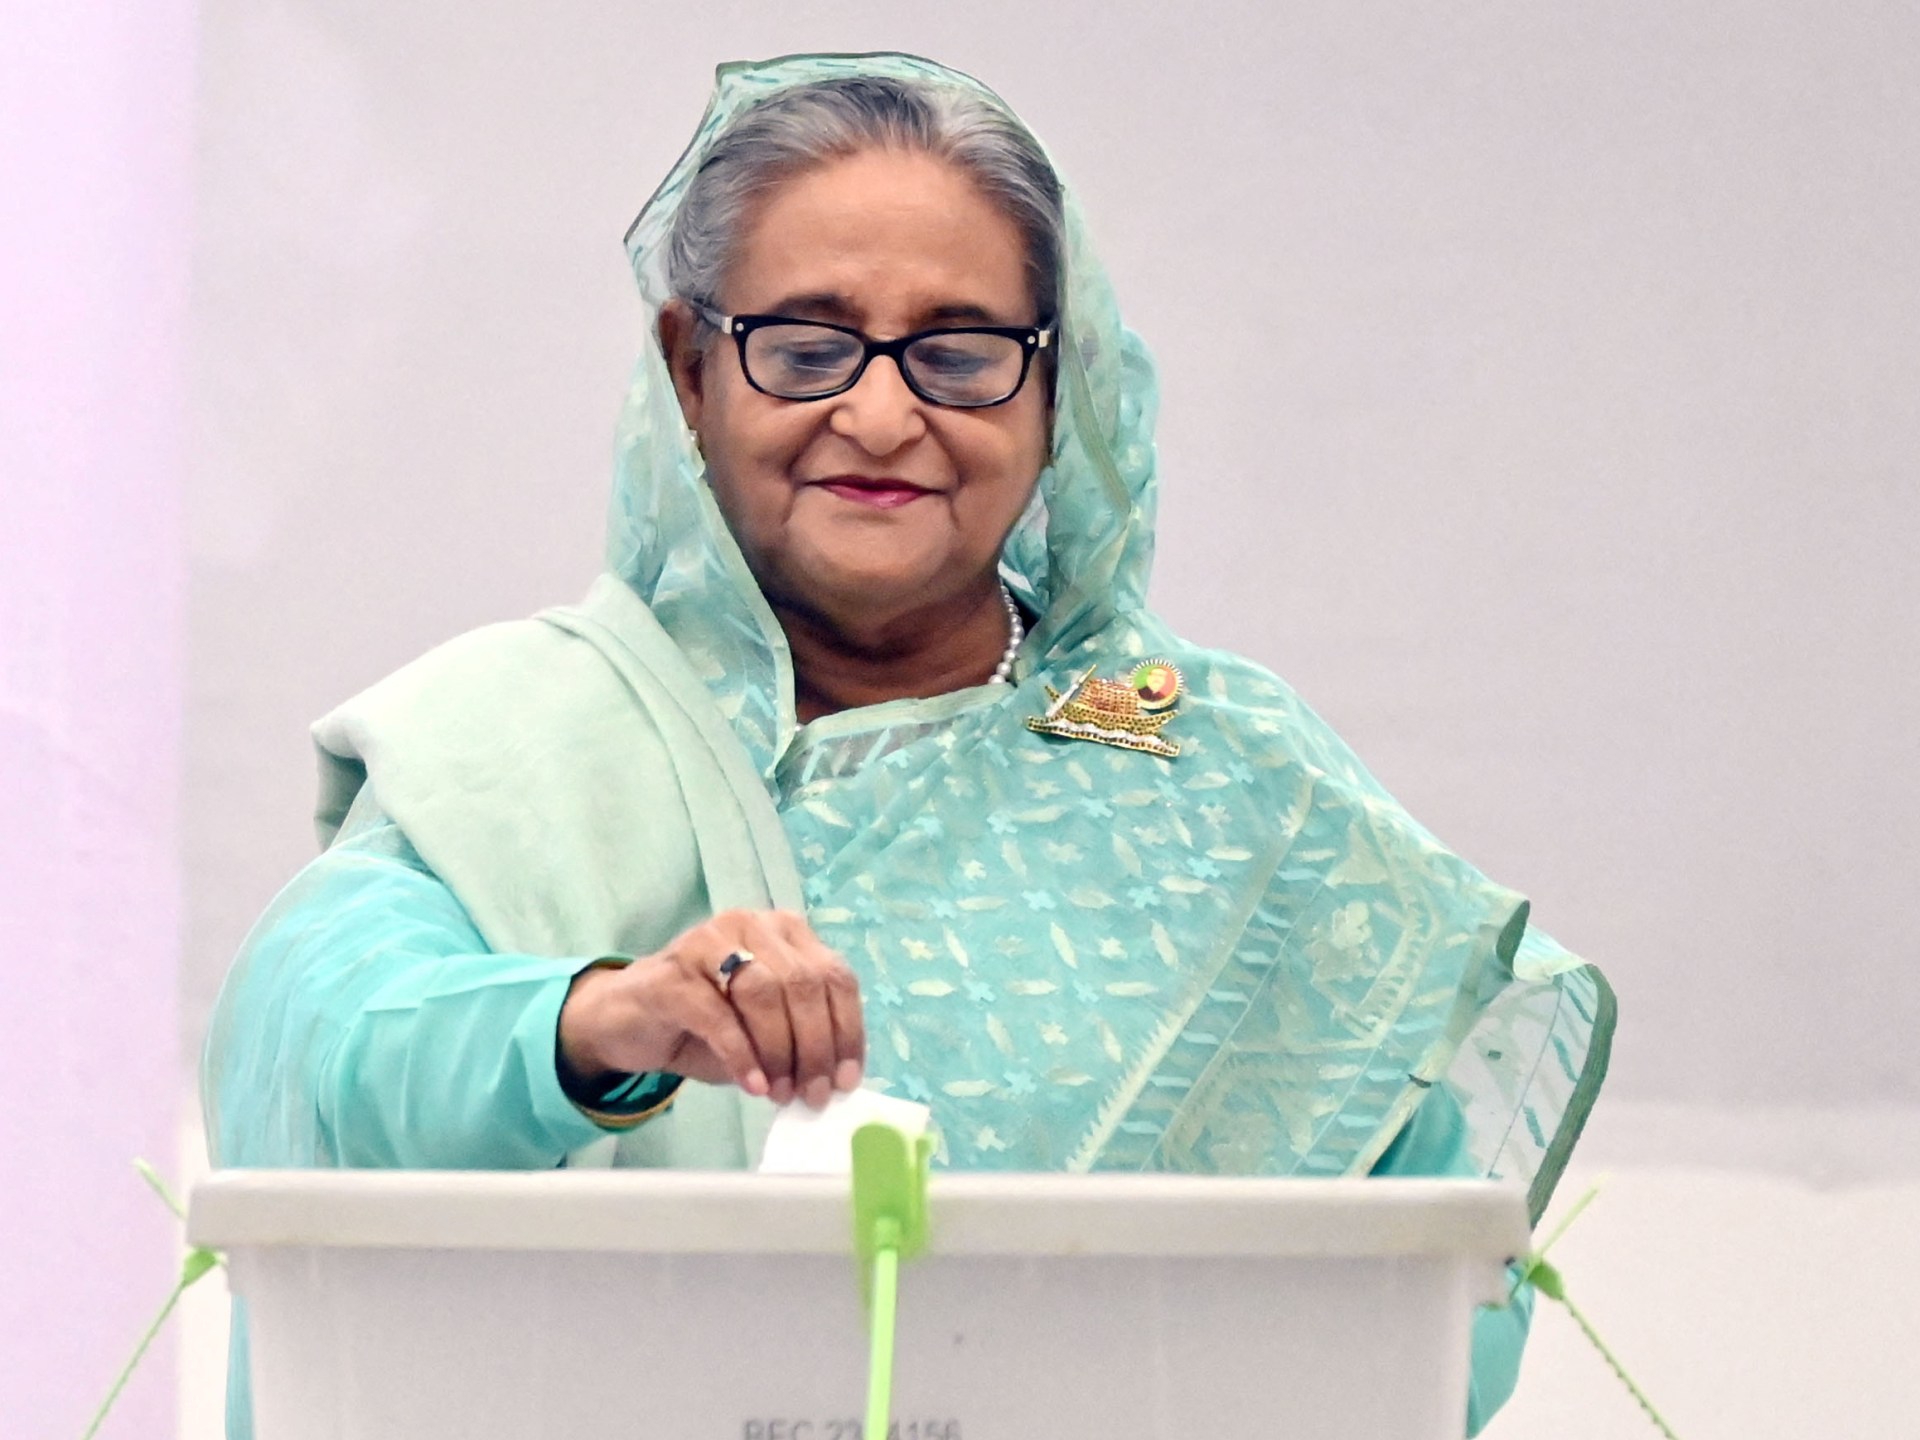 فوز الشيخة حسينة بانتخابات قاطعتها المعارضة في بنغلاديش | أخبار – البوكس نيوز